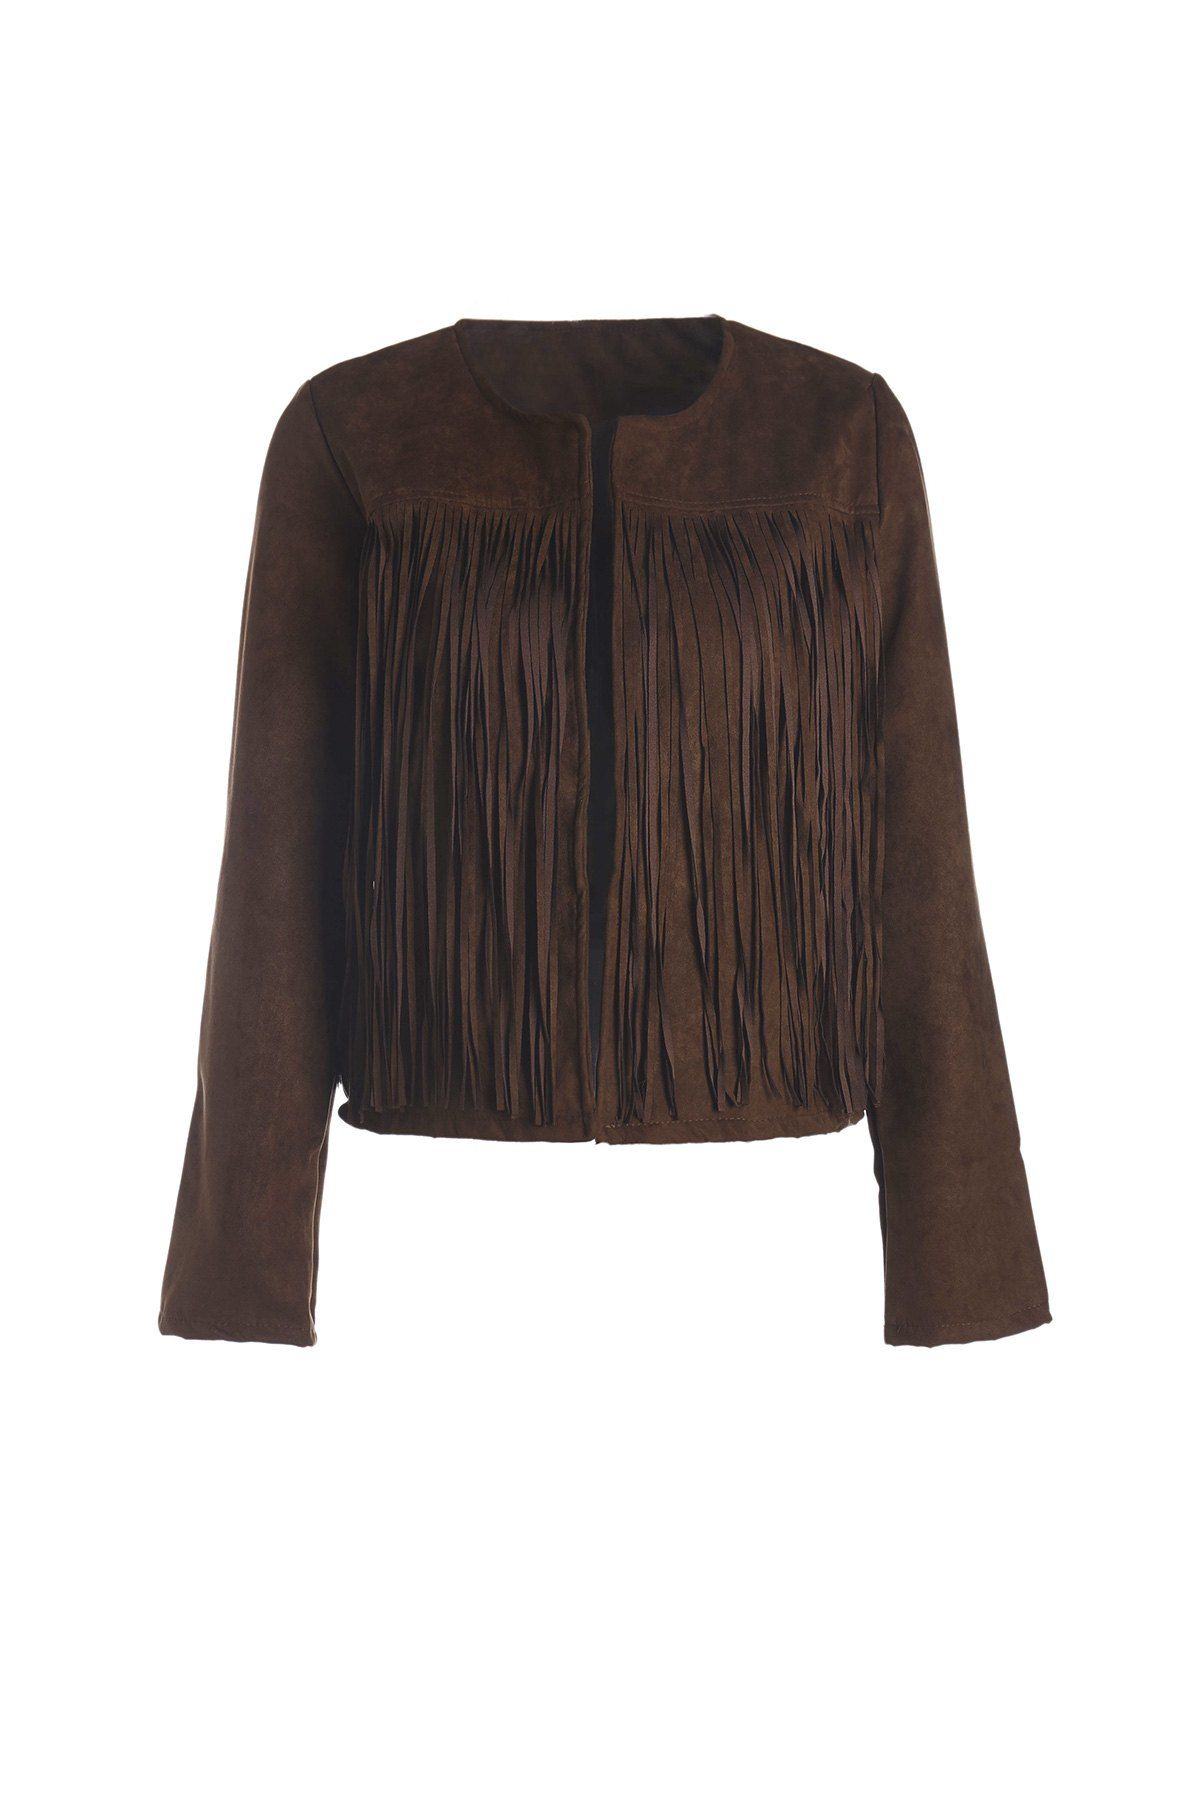 Trendy Stylish Round Neck Long Sleeve Solid Color Fringed Women's Jacket  